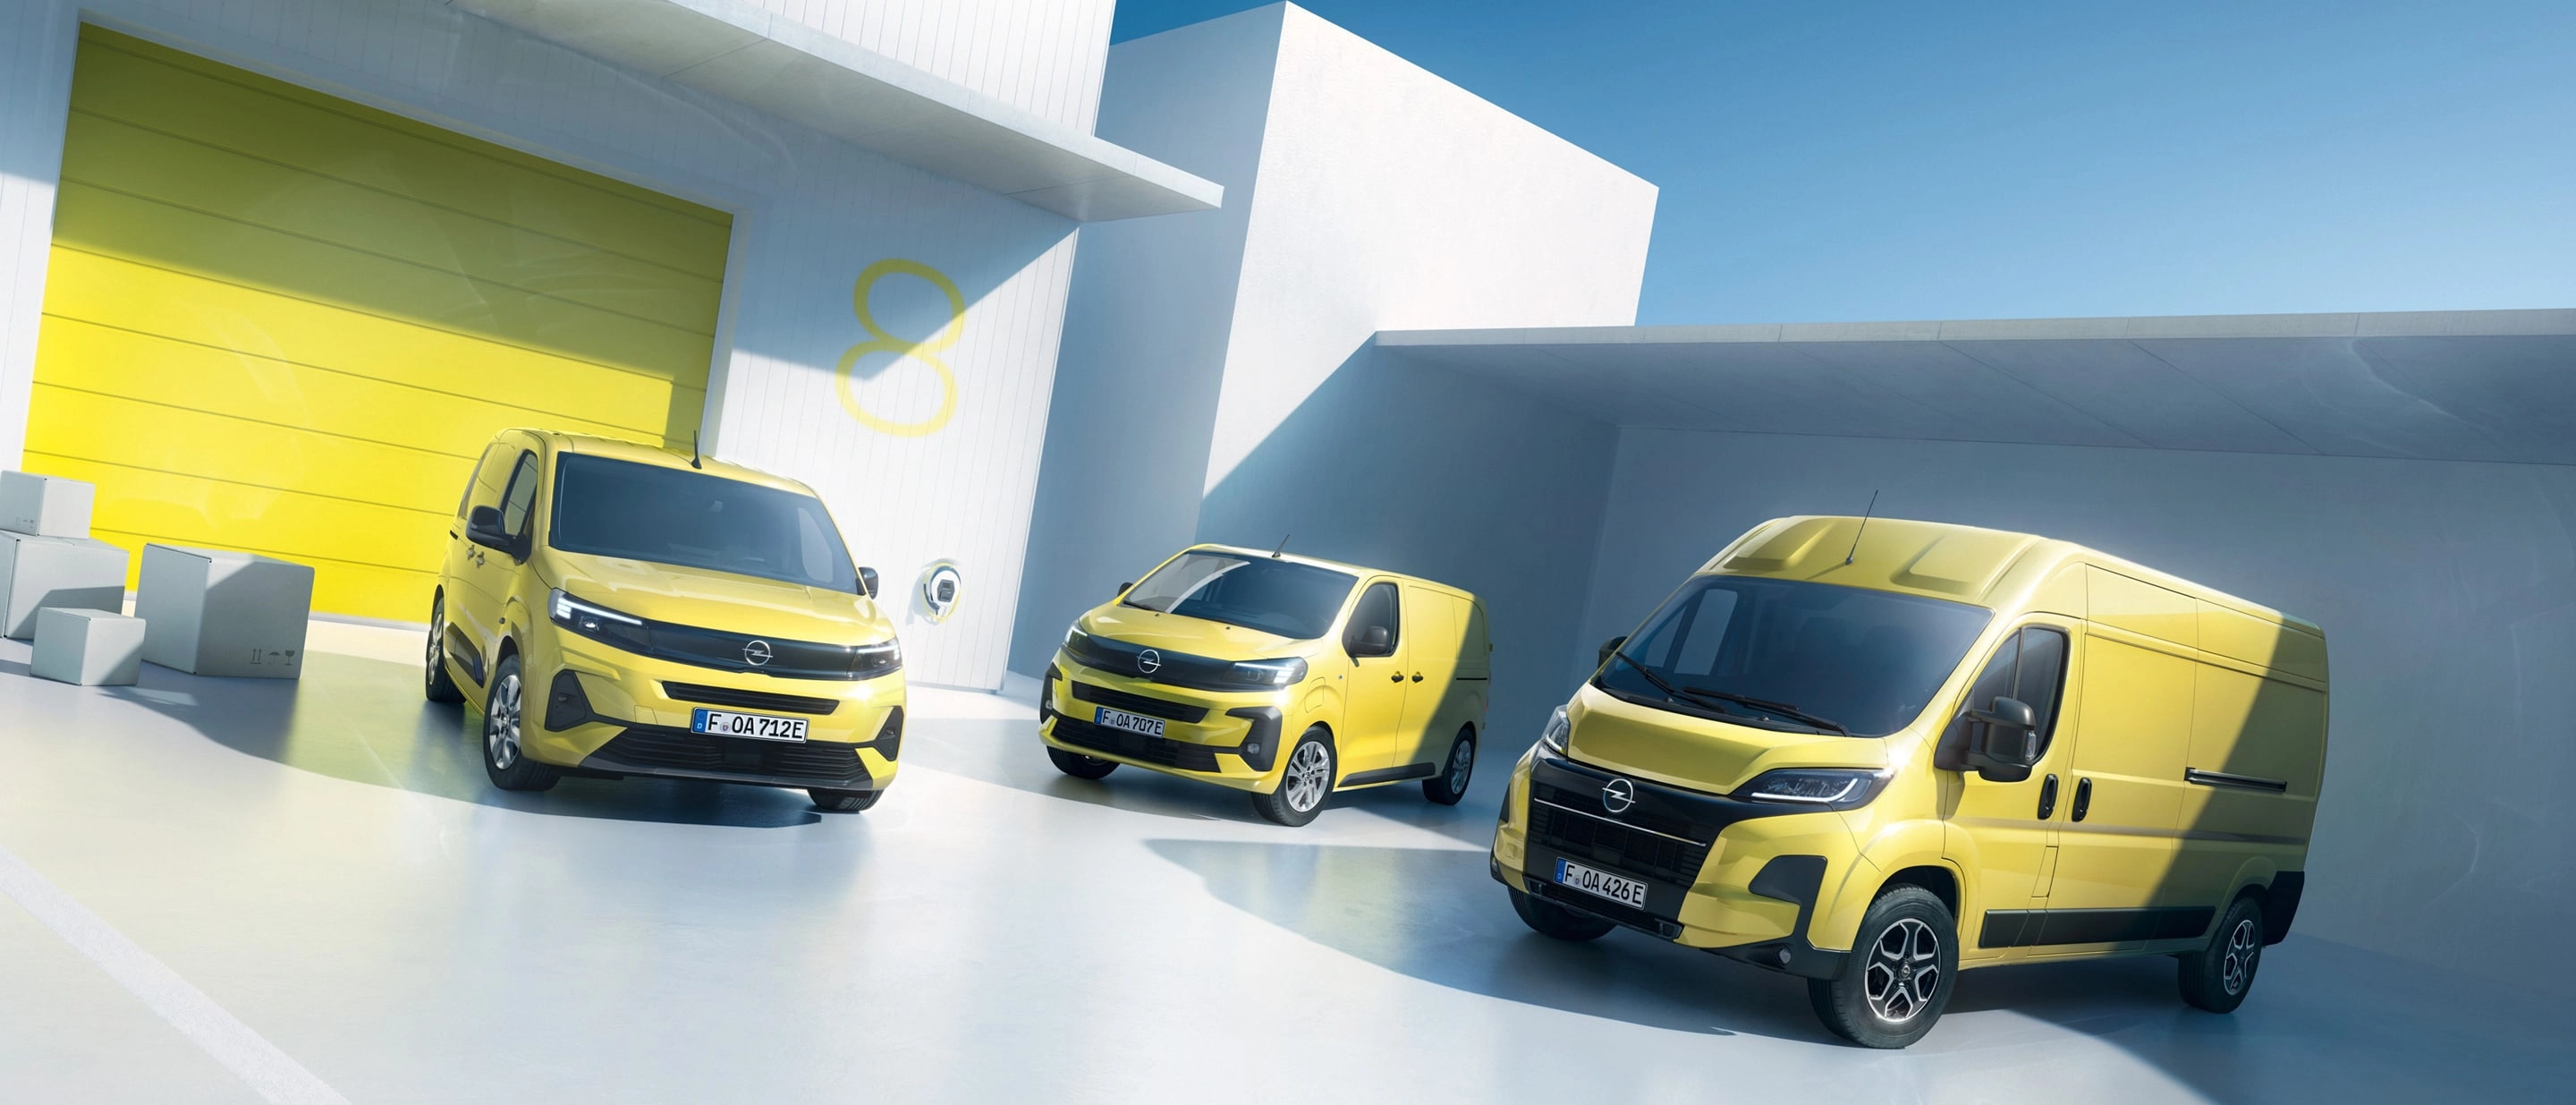 Opel’in Hafif Ticari Araç Ürün Gamı Tamamen Yenilendi!